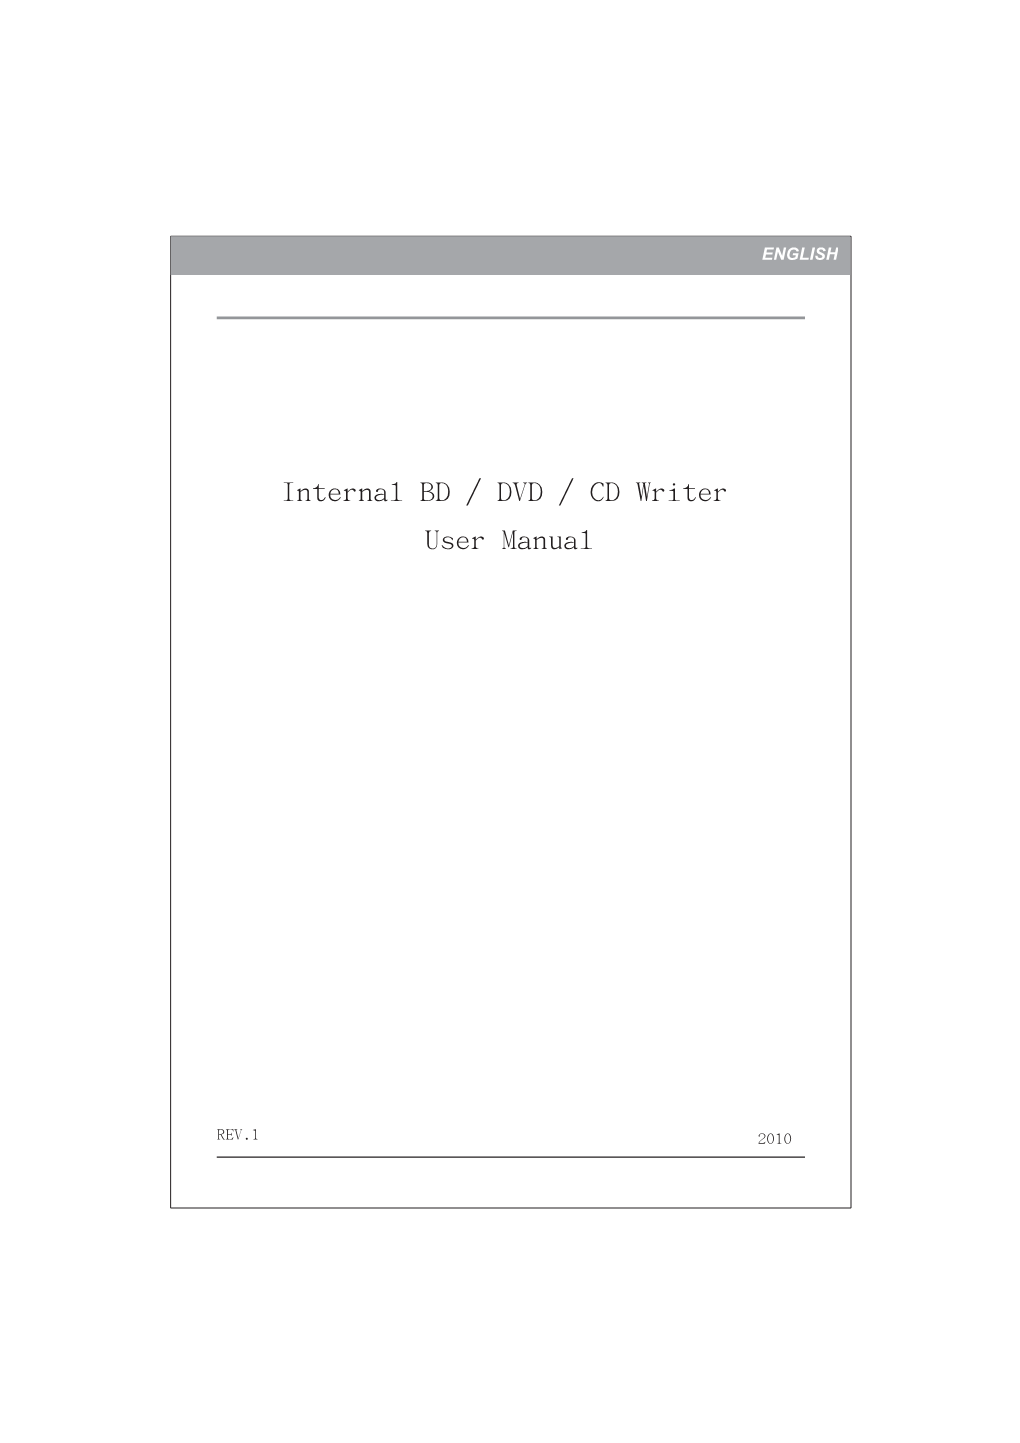 User Manual Internal BD / DVD / CD Writer